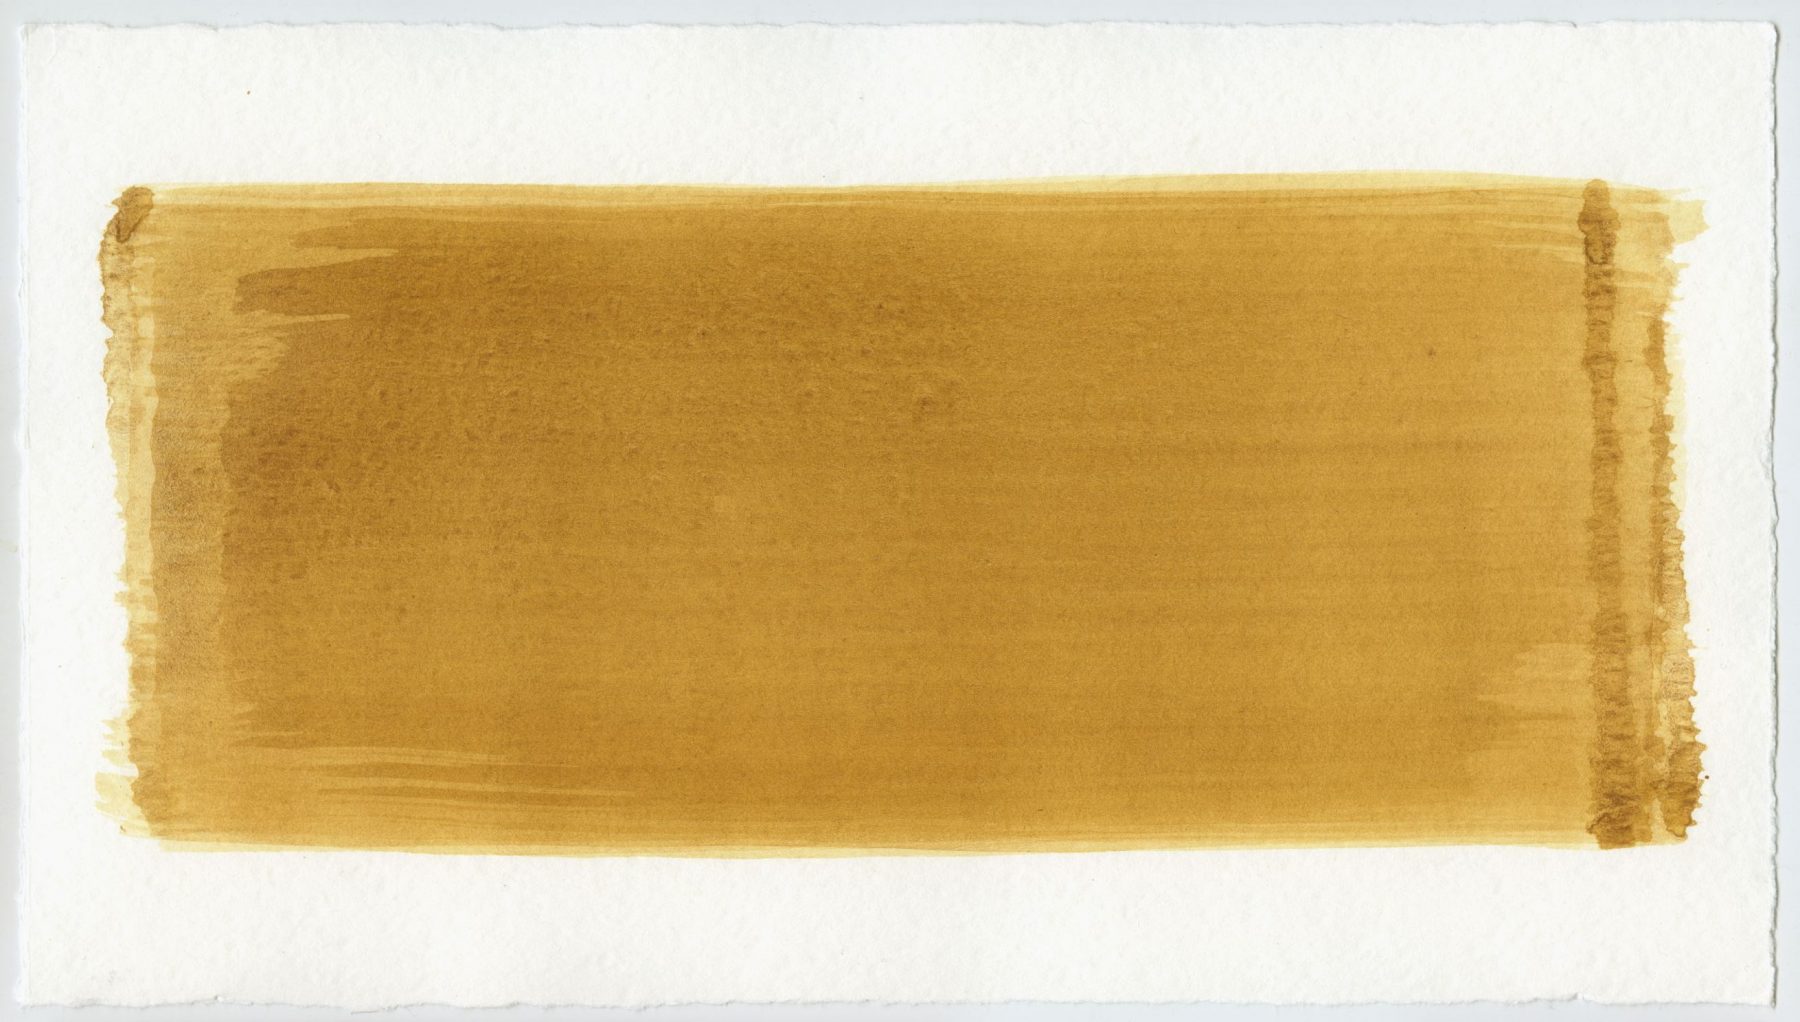 Brush stroke no. 5 - Selfmade pigment: Mortelse goudoker